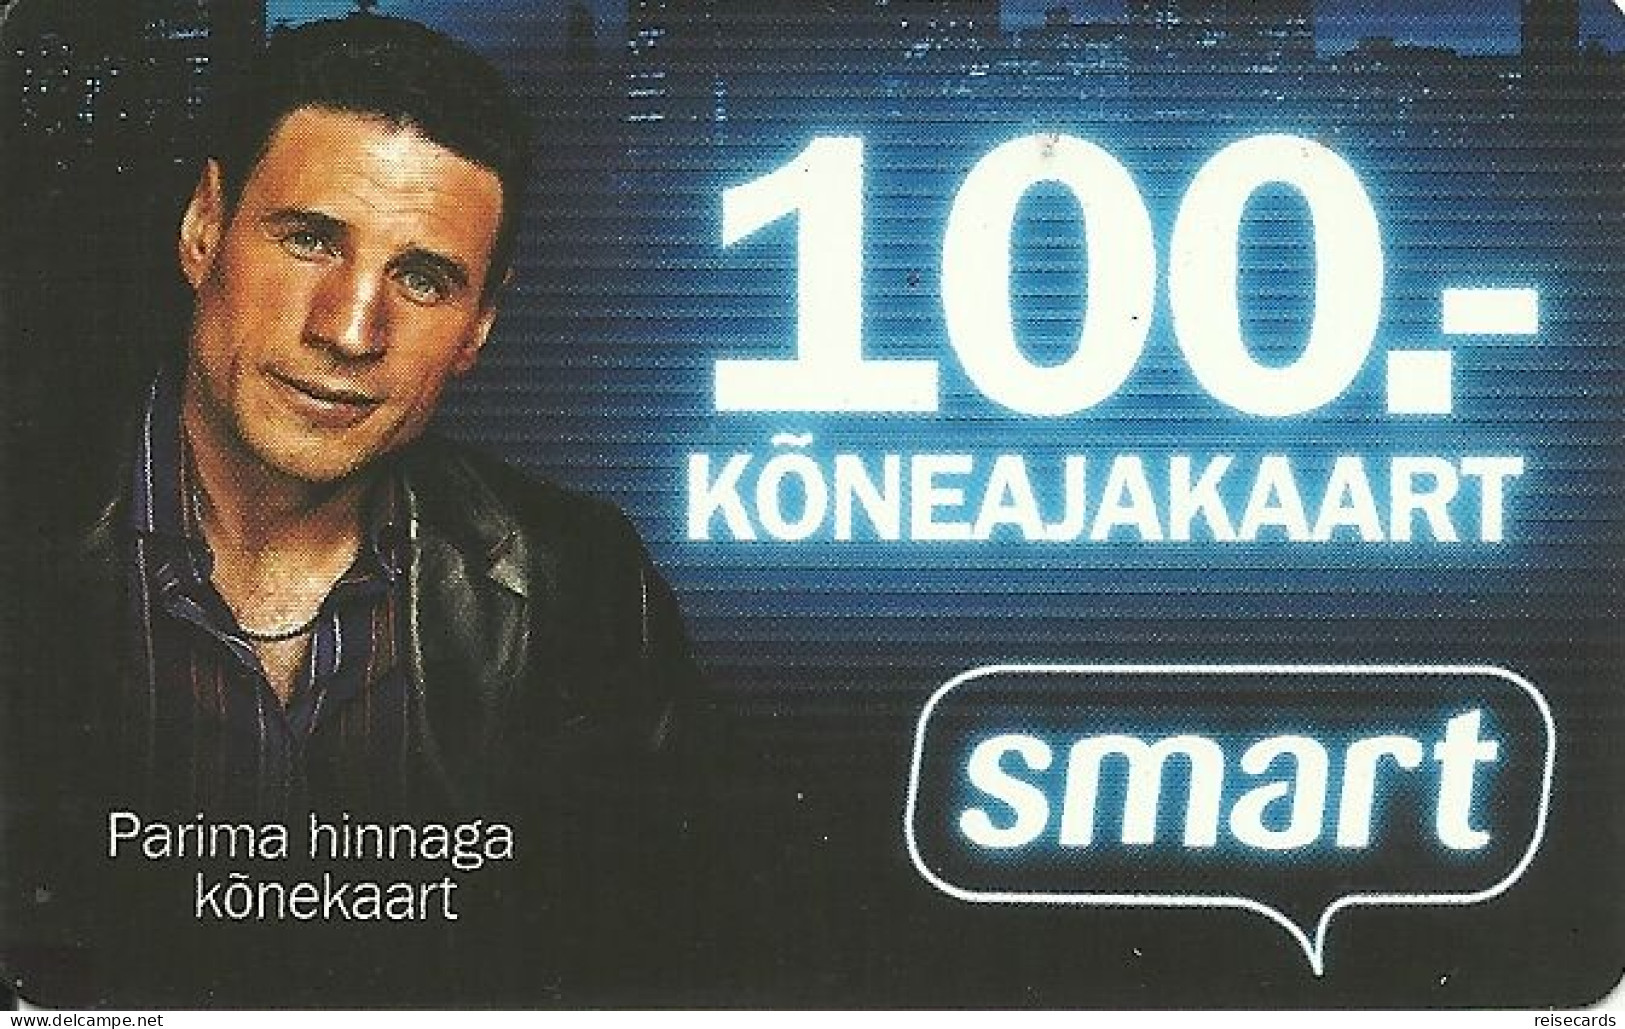 Estonia: Prepaid Tele2 Smart - Estonia